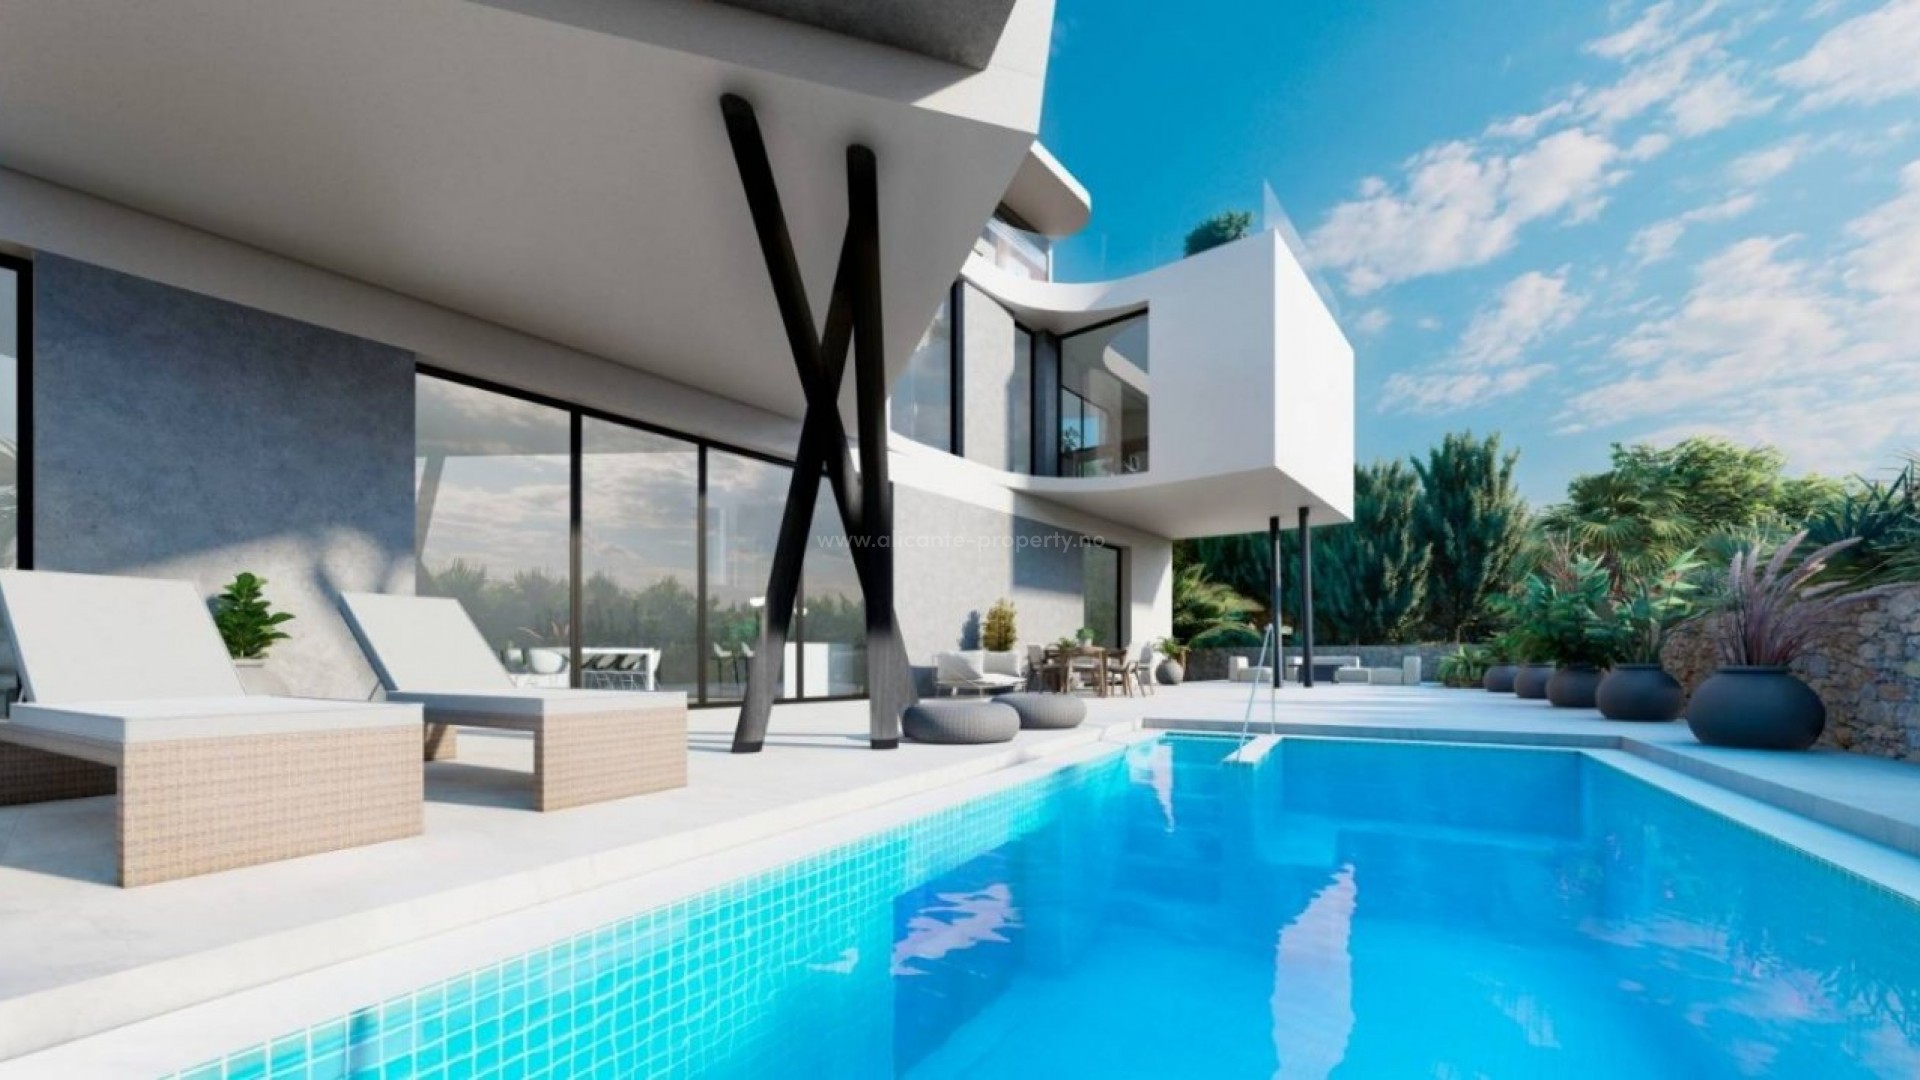 Luksusvilla i Campoamor med 4 soverom, 4 bad, 250 meter fra sjøen, terrasse med evighetsbasseng. Eksepsjonelt design på en eksklusiv villa.